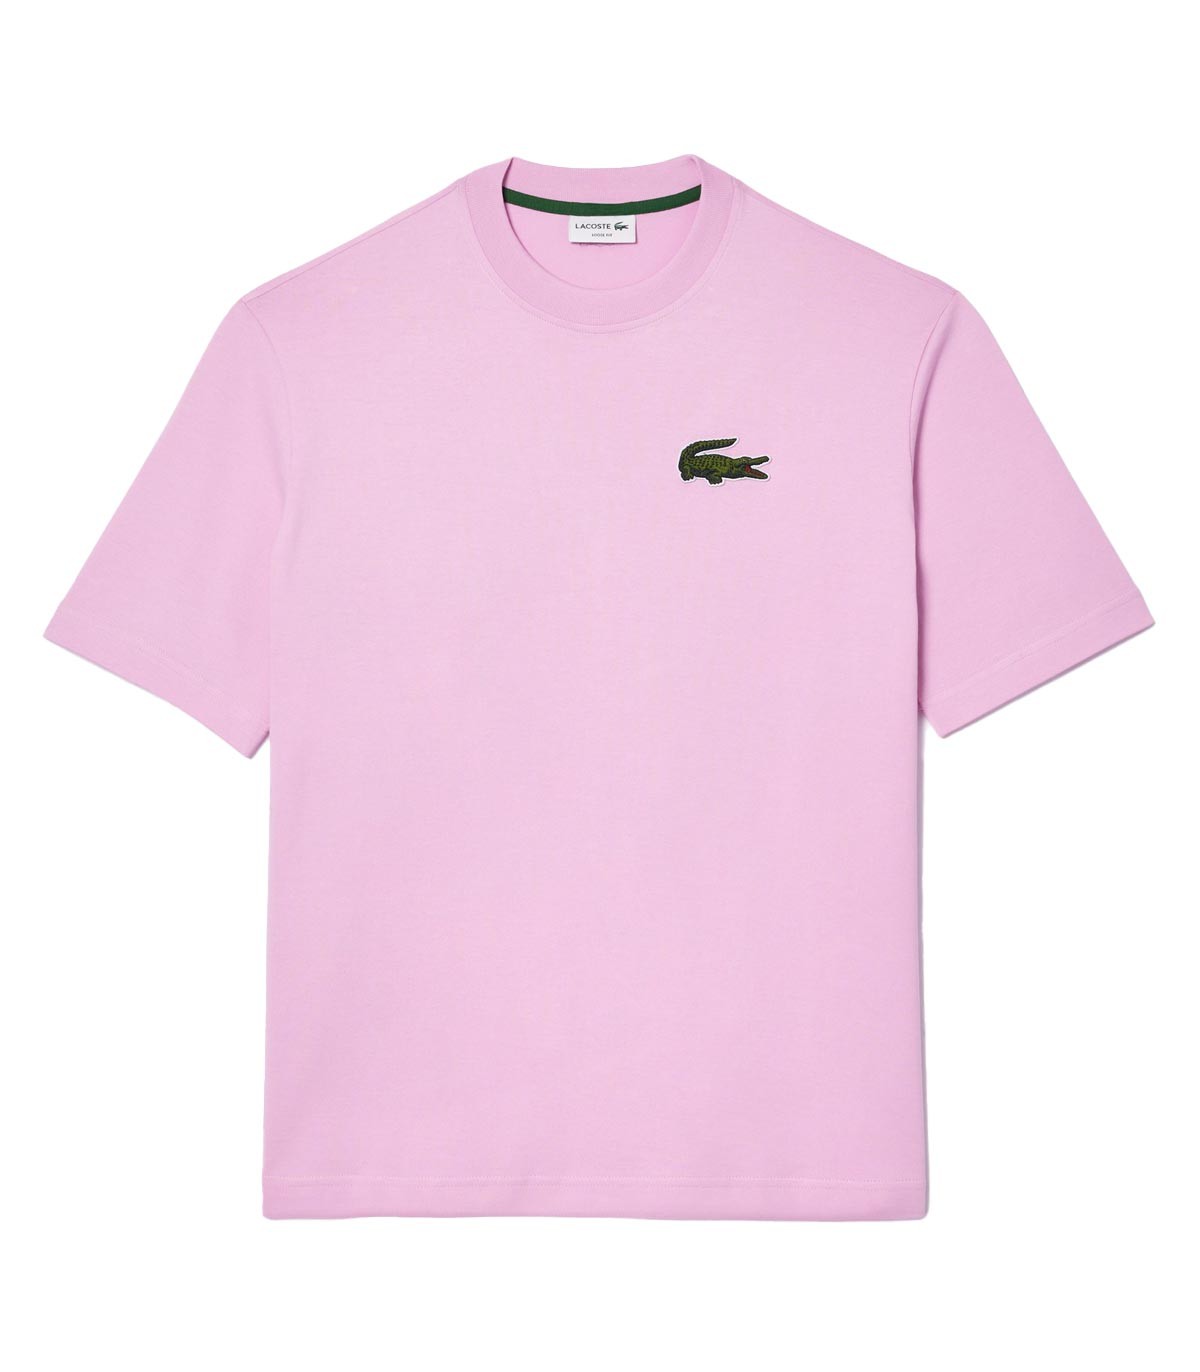 Lacoste - Camiseta Unisex Loose Fit - Rosa